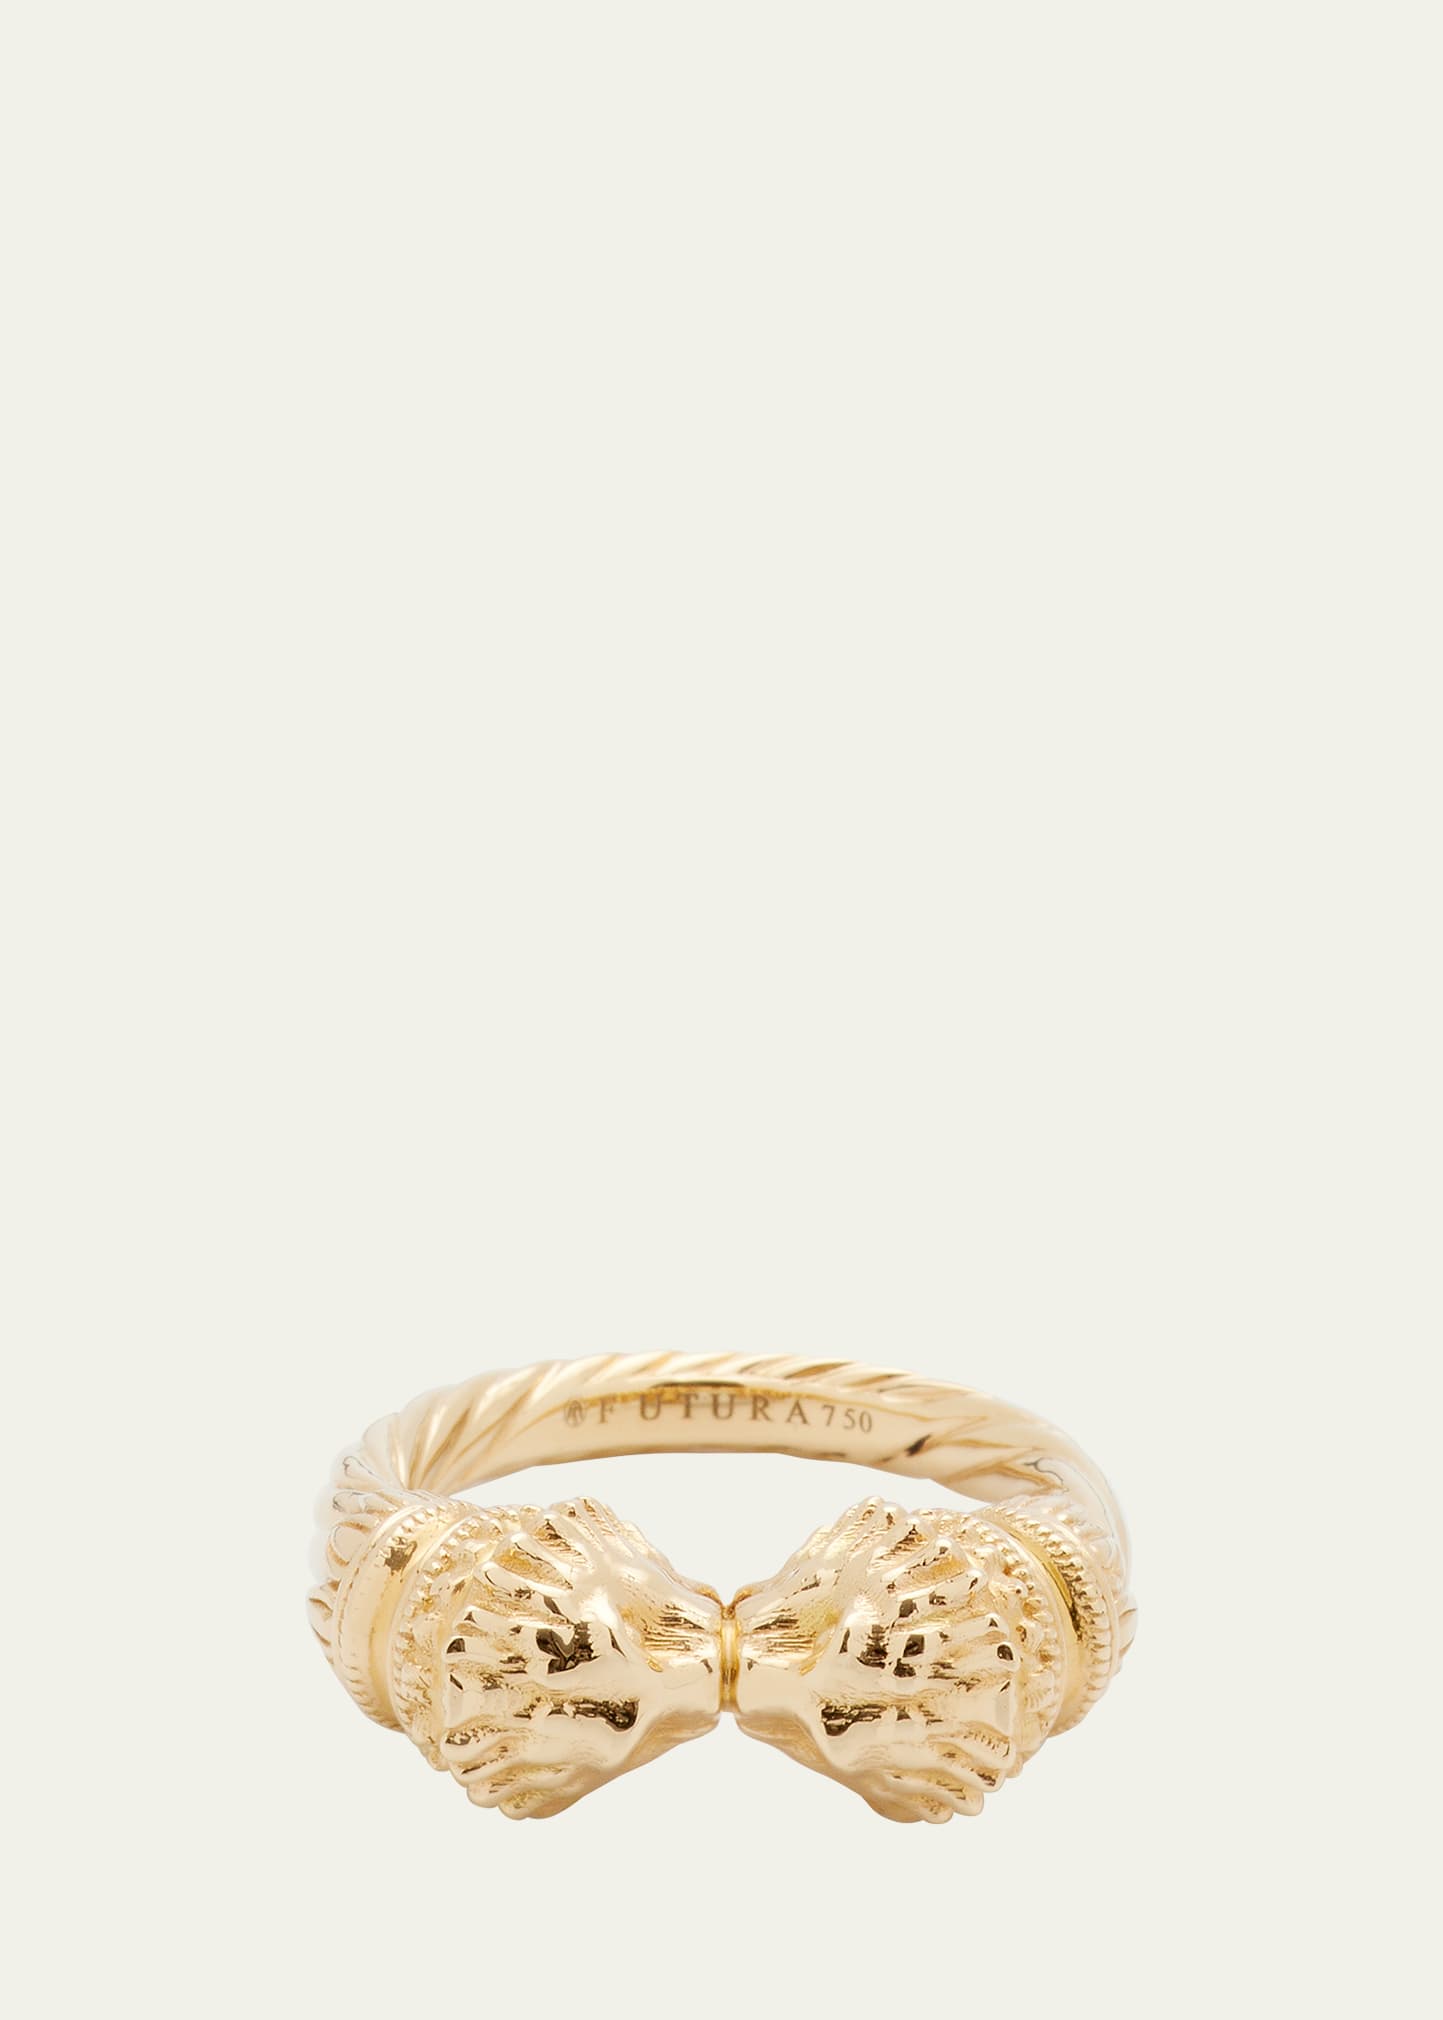 18K Yellow Gold Lion Ring